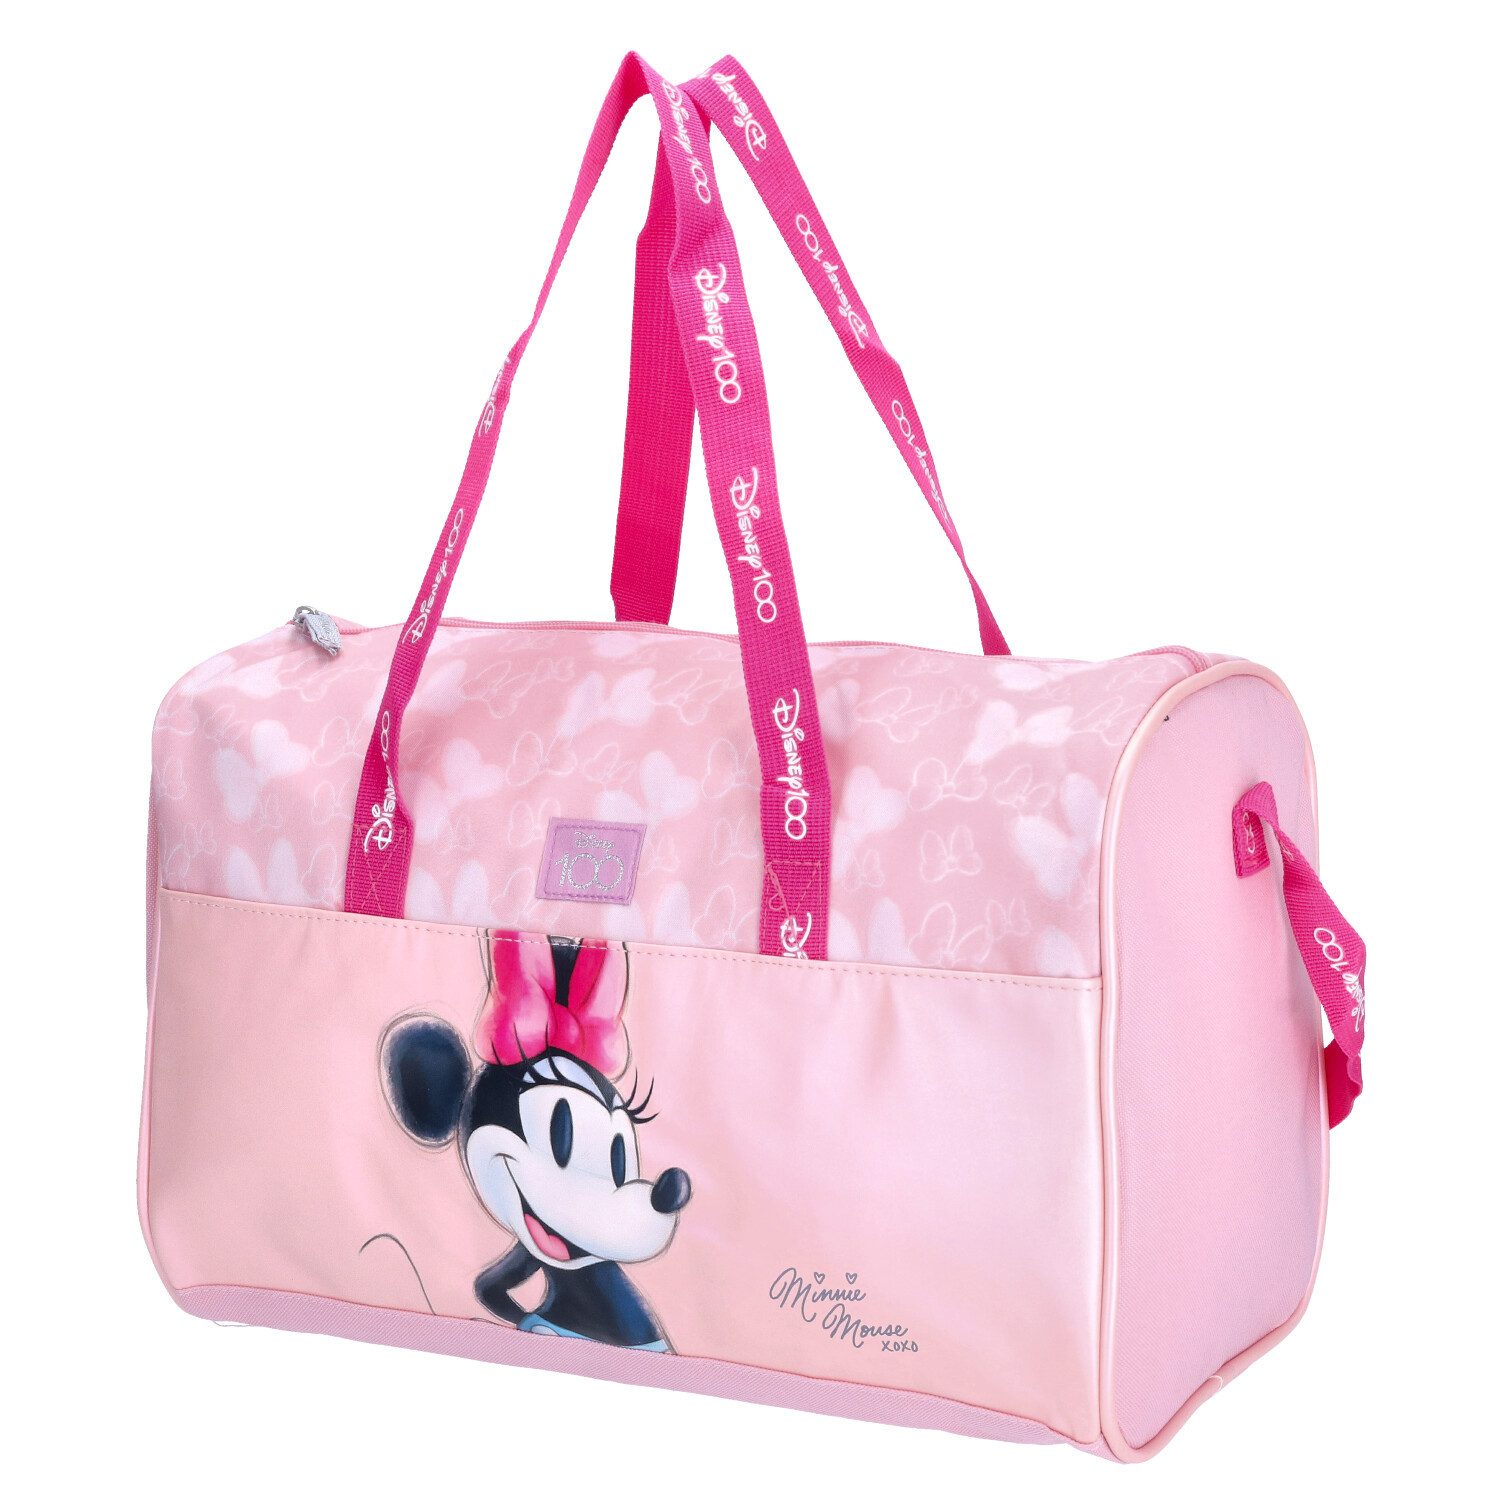 Jacob Kinderrucksack Jacob Sporttasche Minnie Mouse Disney Rosa